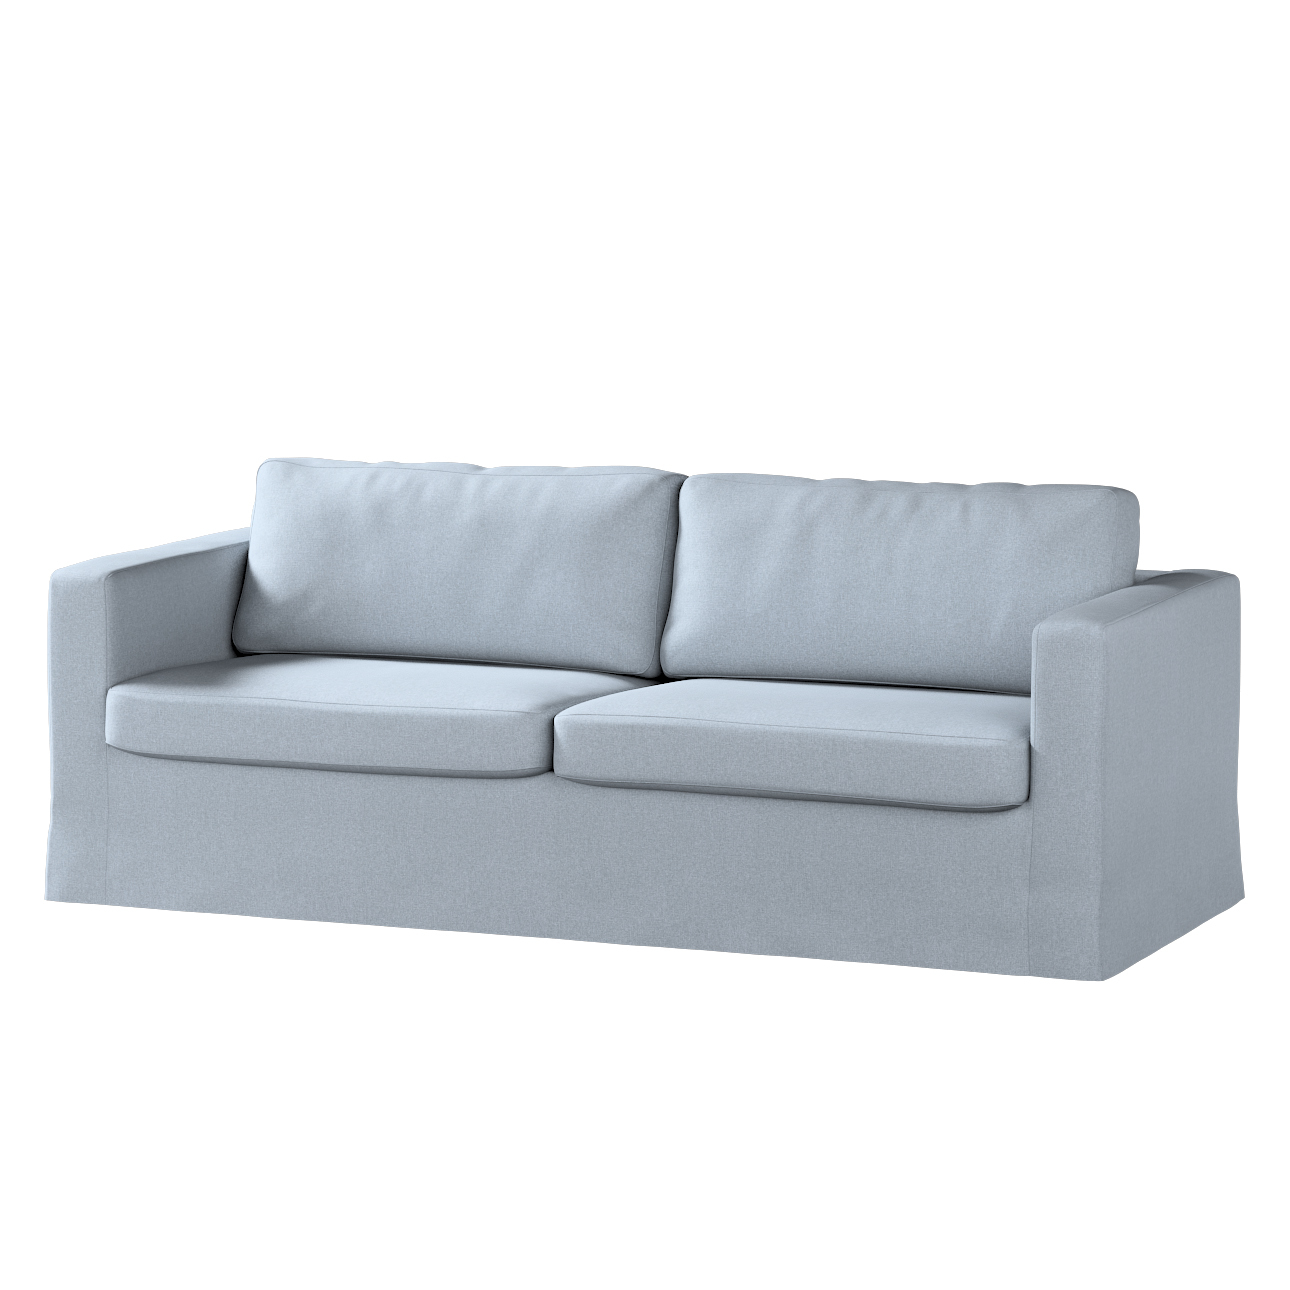 Bezug für Karlstad 3-Sitzer Sofa nicht ausklappbar, lang, steingrau, Bezug günstig online kaufen